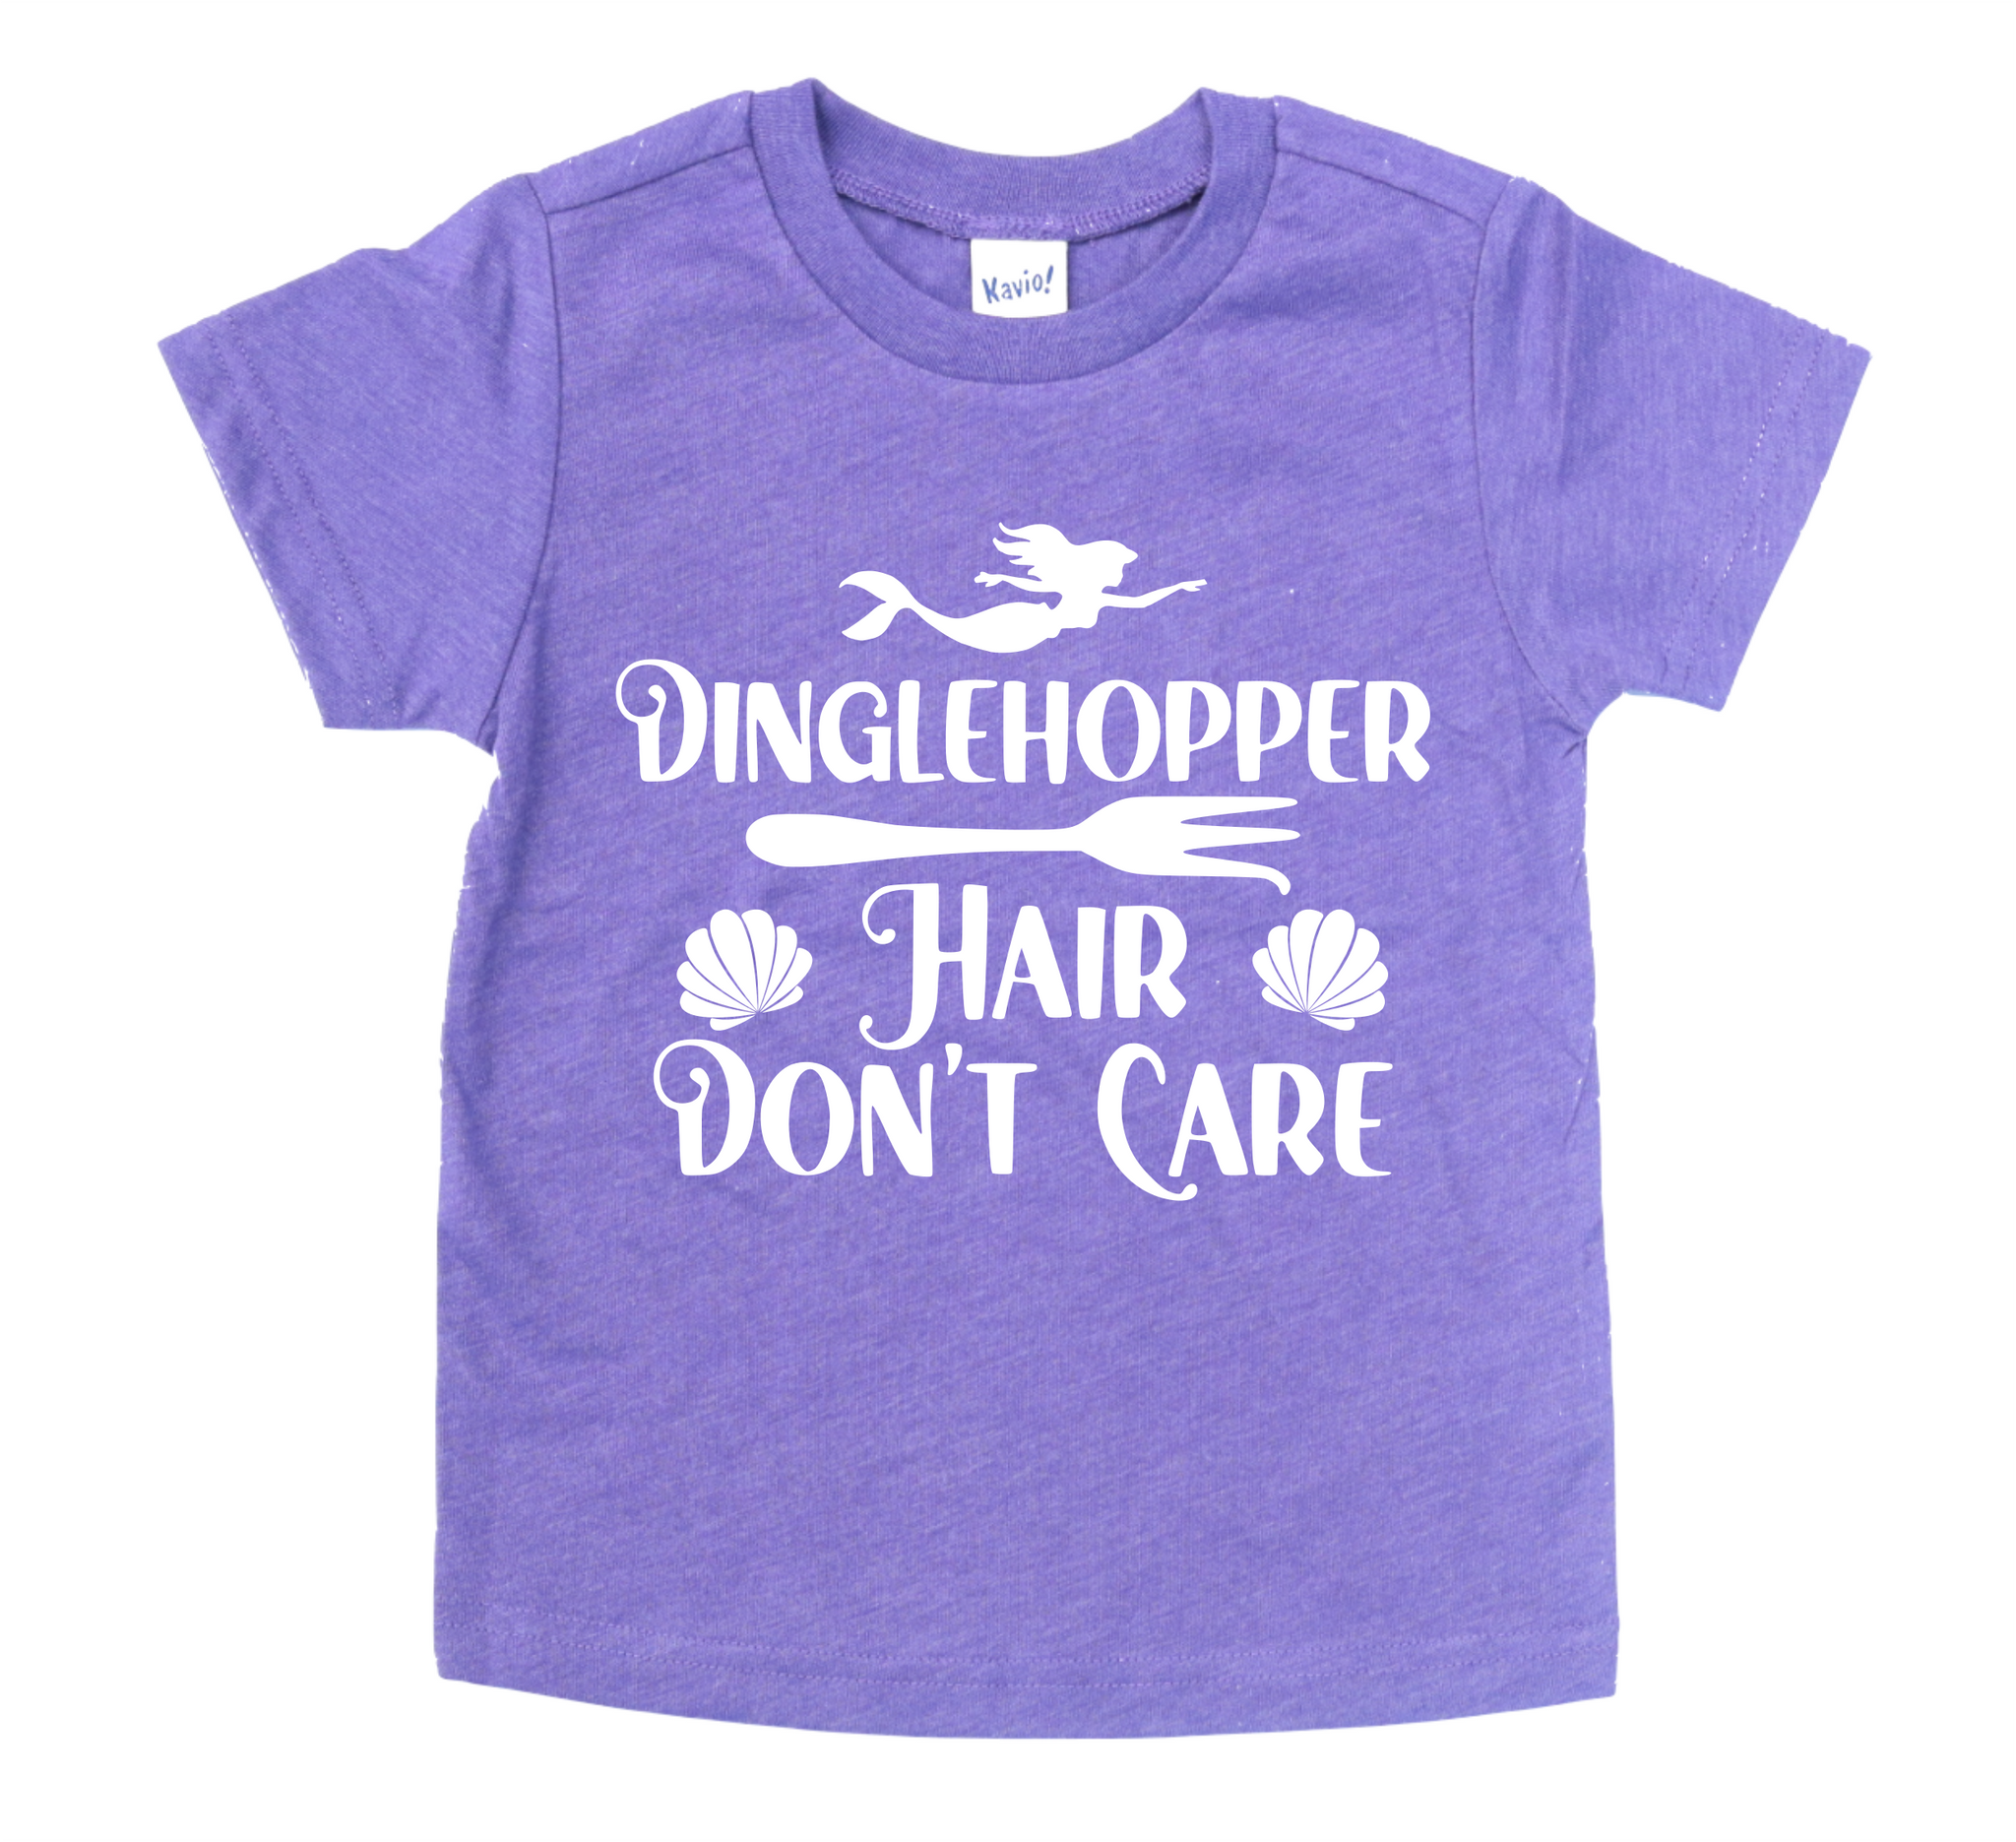 DINGLEHOPPER HAIR DON'T CARE KIDS SHIRT